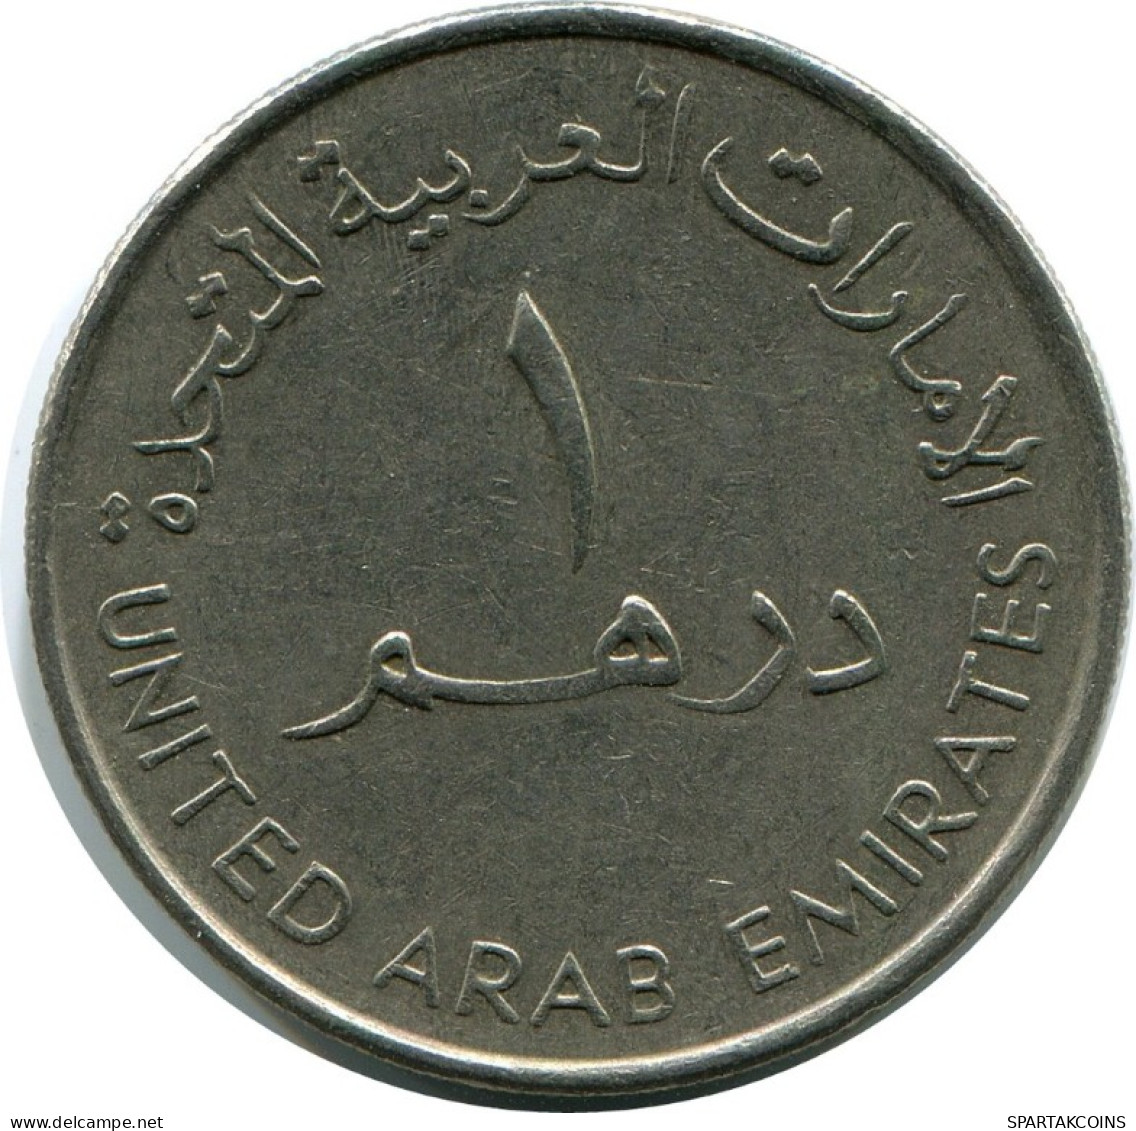 1 DIRHAM 1990 UAE UNITED ARAB EMIRATES Islamic Coin #AH994.U.A - Emiratos Arabes